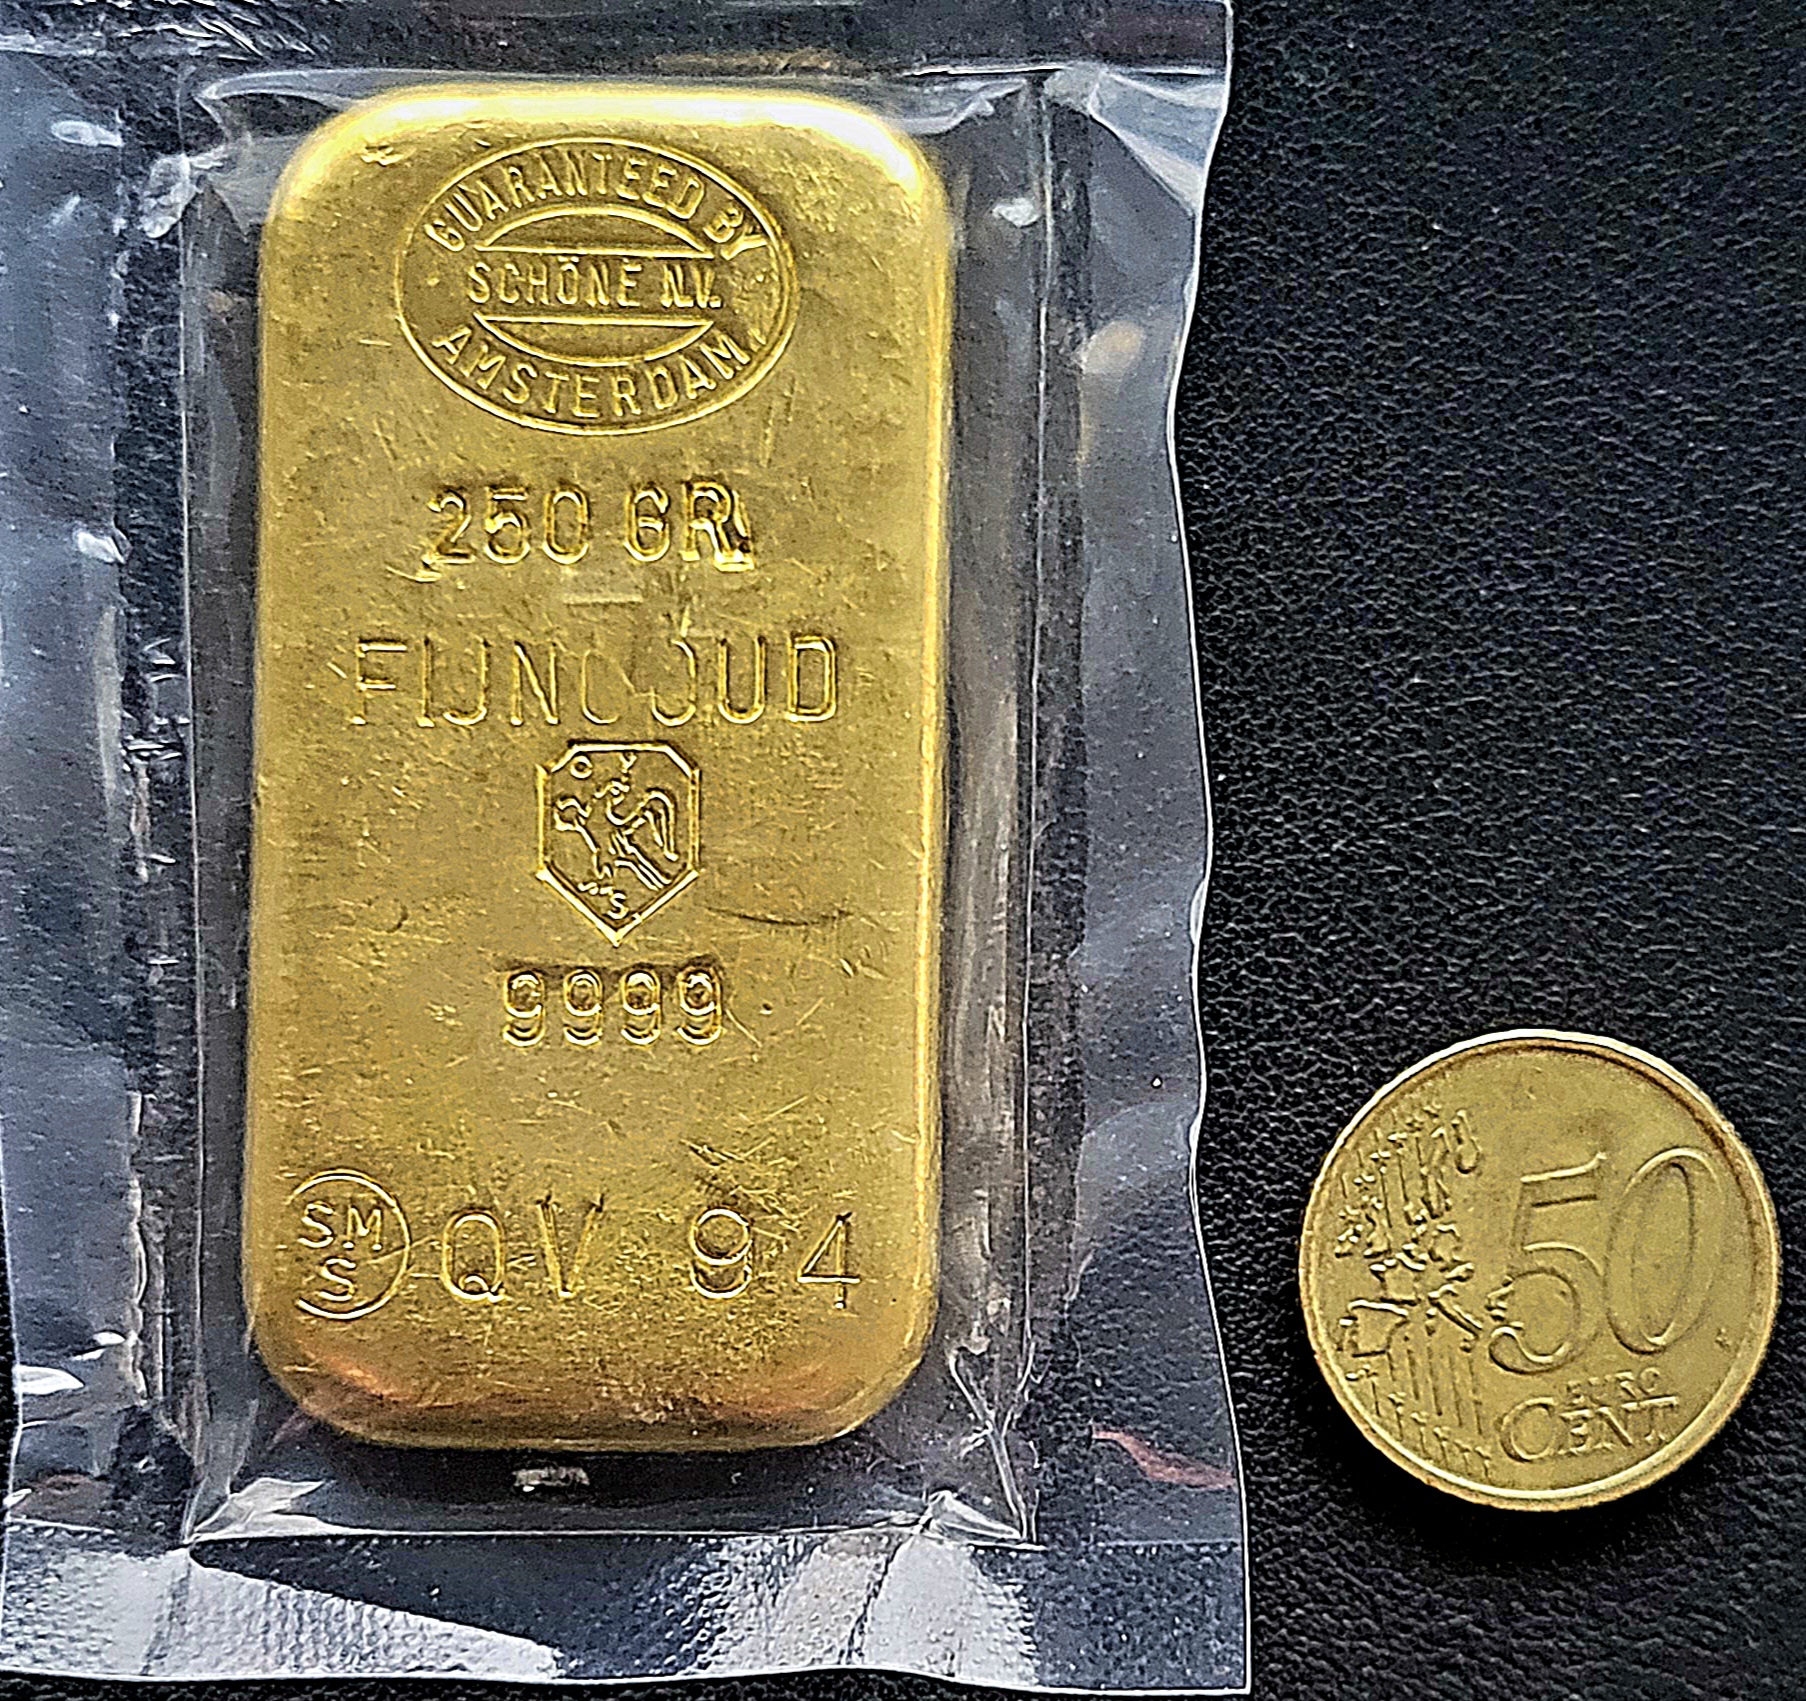 250 gram goudbaar - Schone (super schaars!!) (lees product ivm verzending) | 101 munten